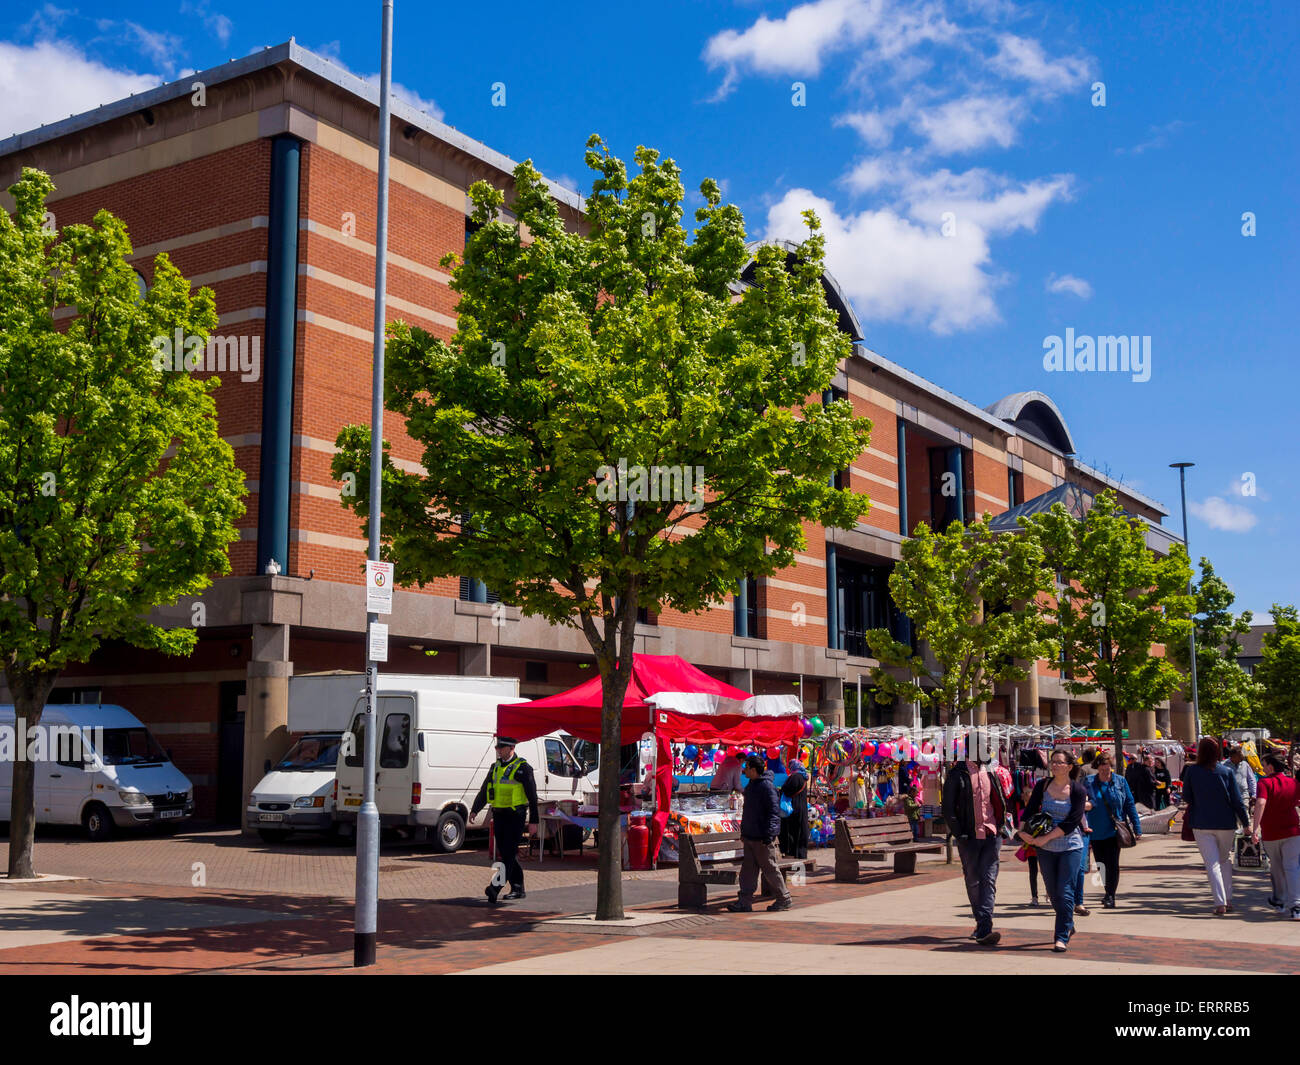 25 Middlesbrough anual Mela evento multicultural del 6 de junio de 2015 puestos de mercado en frente del edificio de tribunales combinado Foto de stock